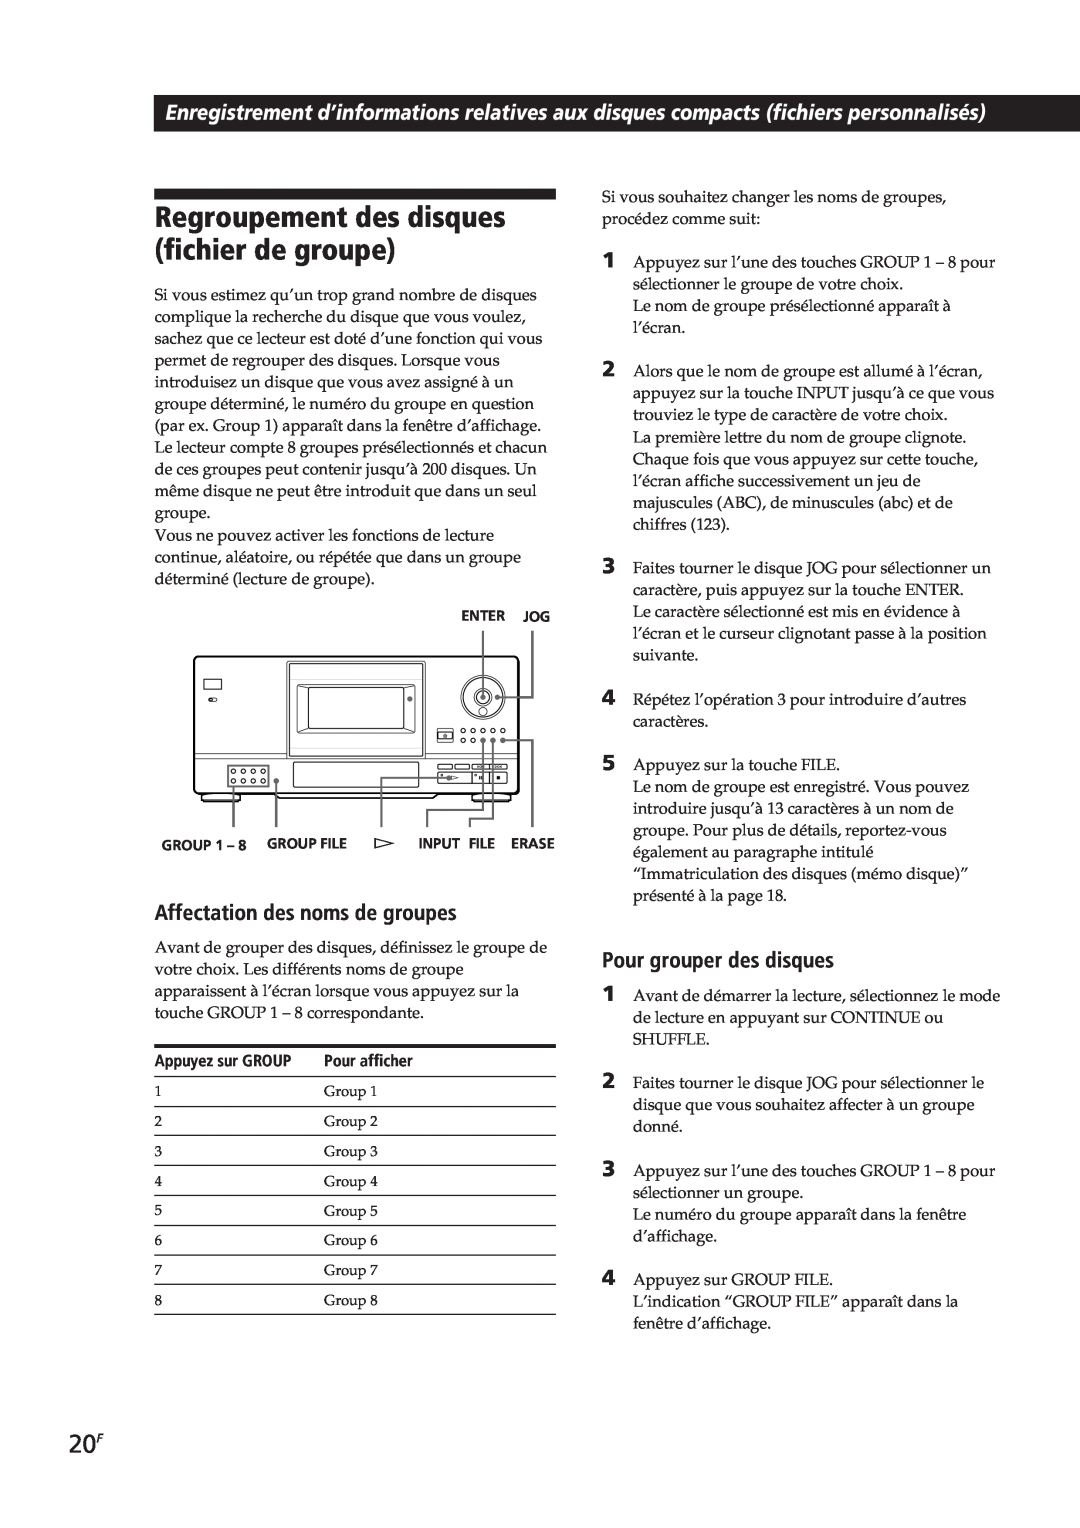 Sony CDP-CX153 manual Regroupement des disques fichier de groupe, Affectation des noms de groupes, Pour grouper des disques 